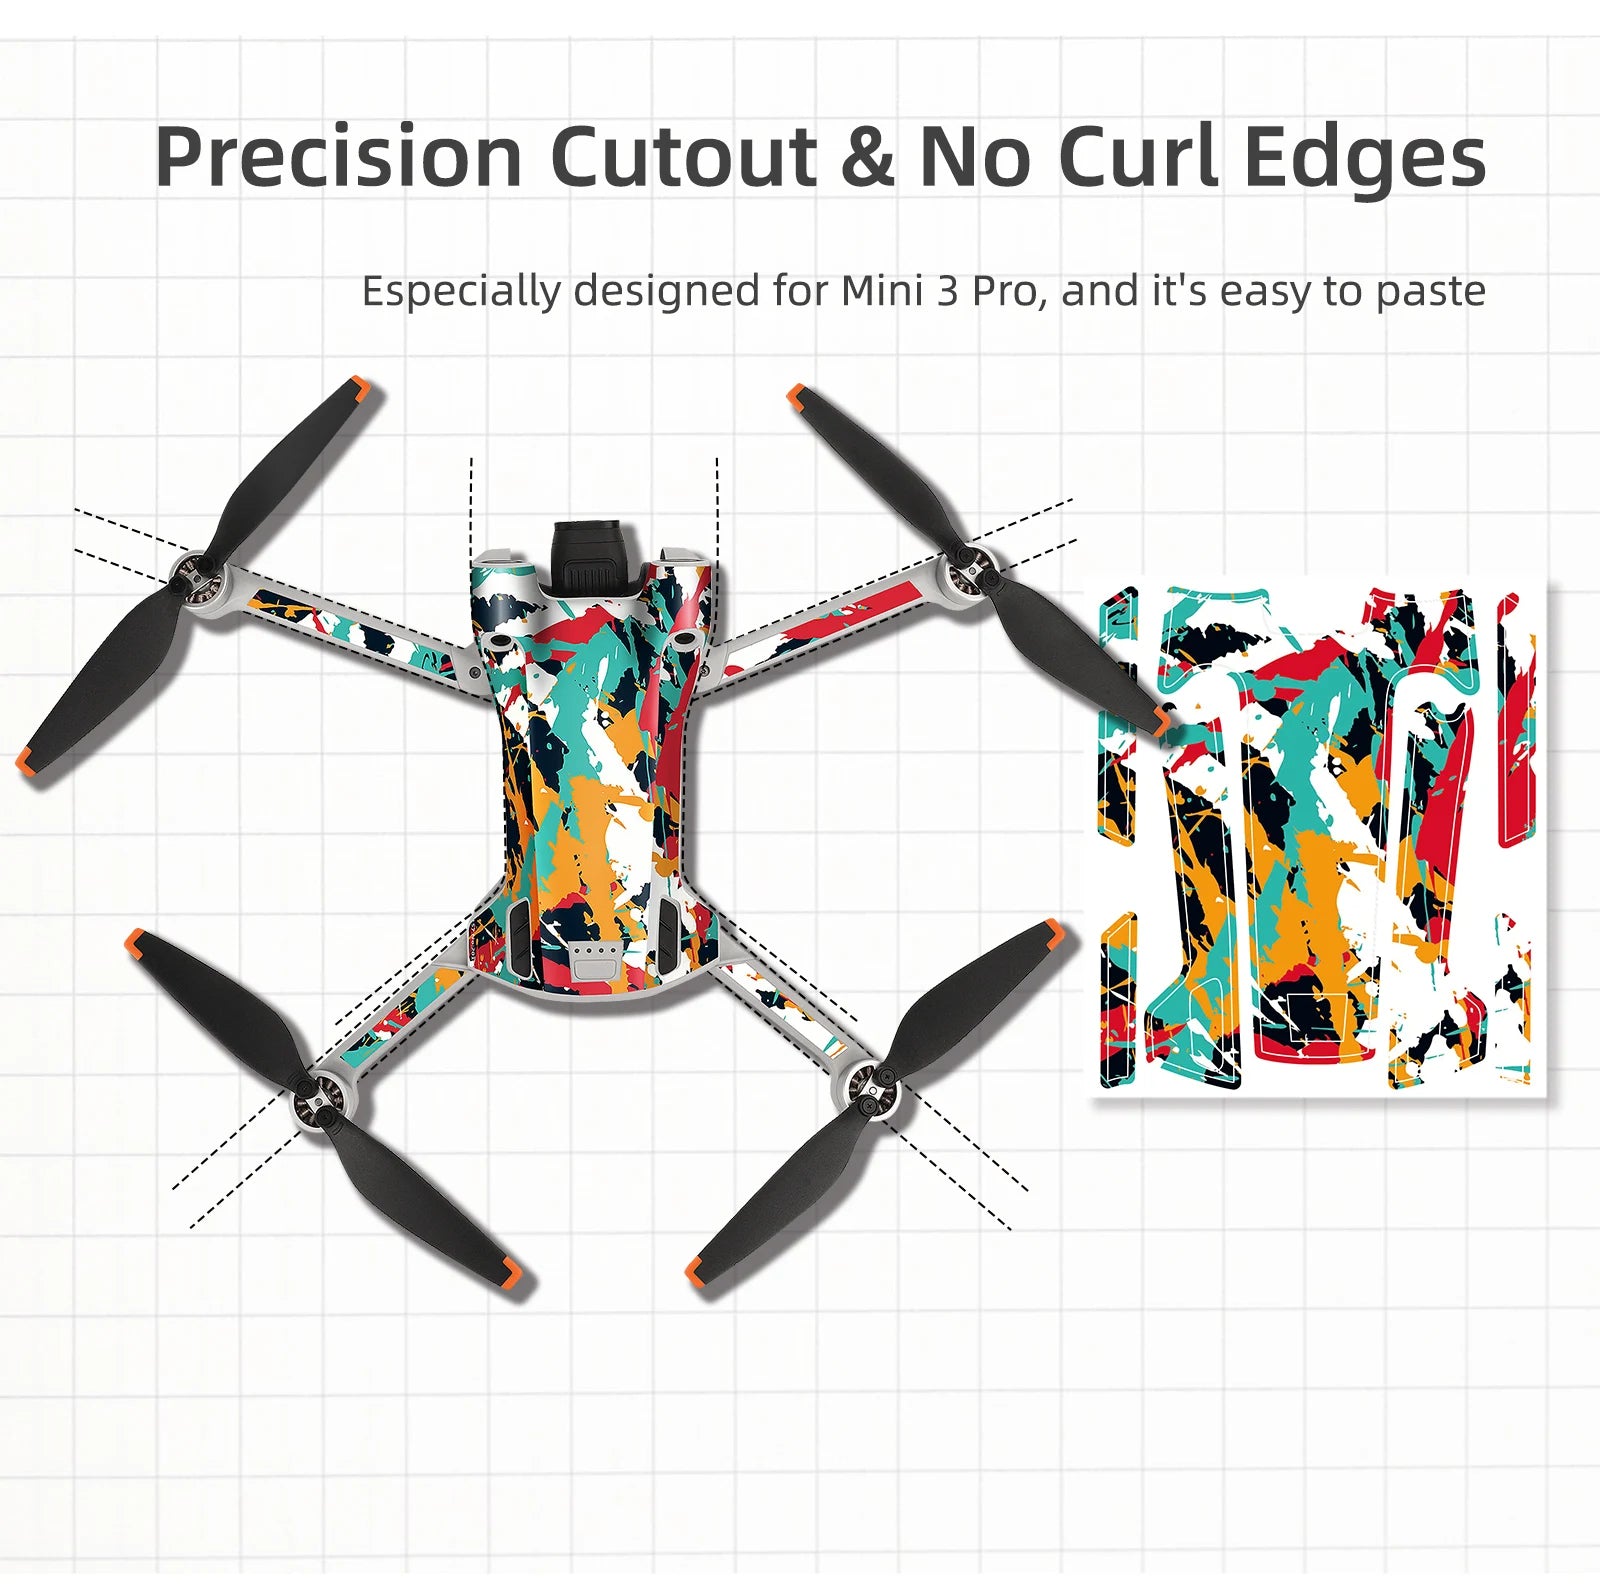 Precision Cutout & No Curl Edges Especially designed for Mini 3 Pro .